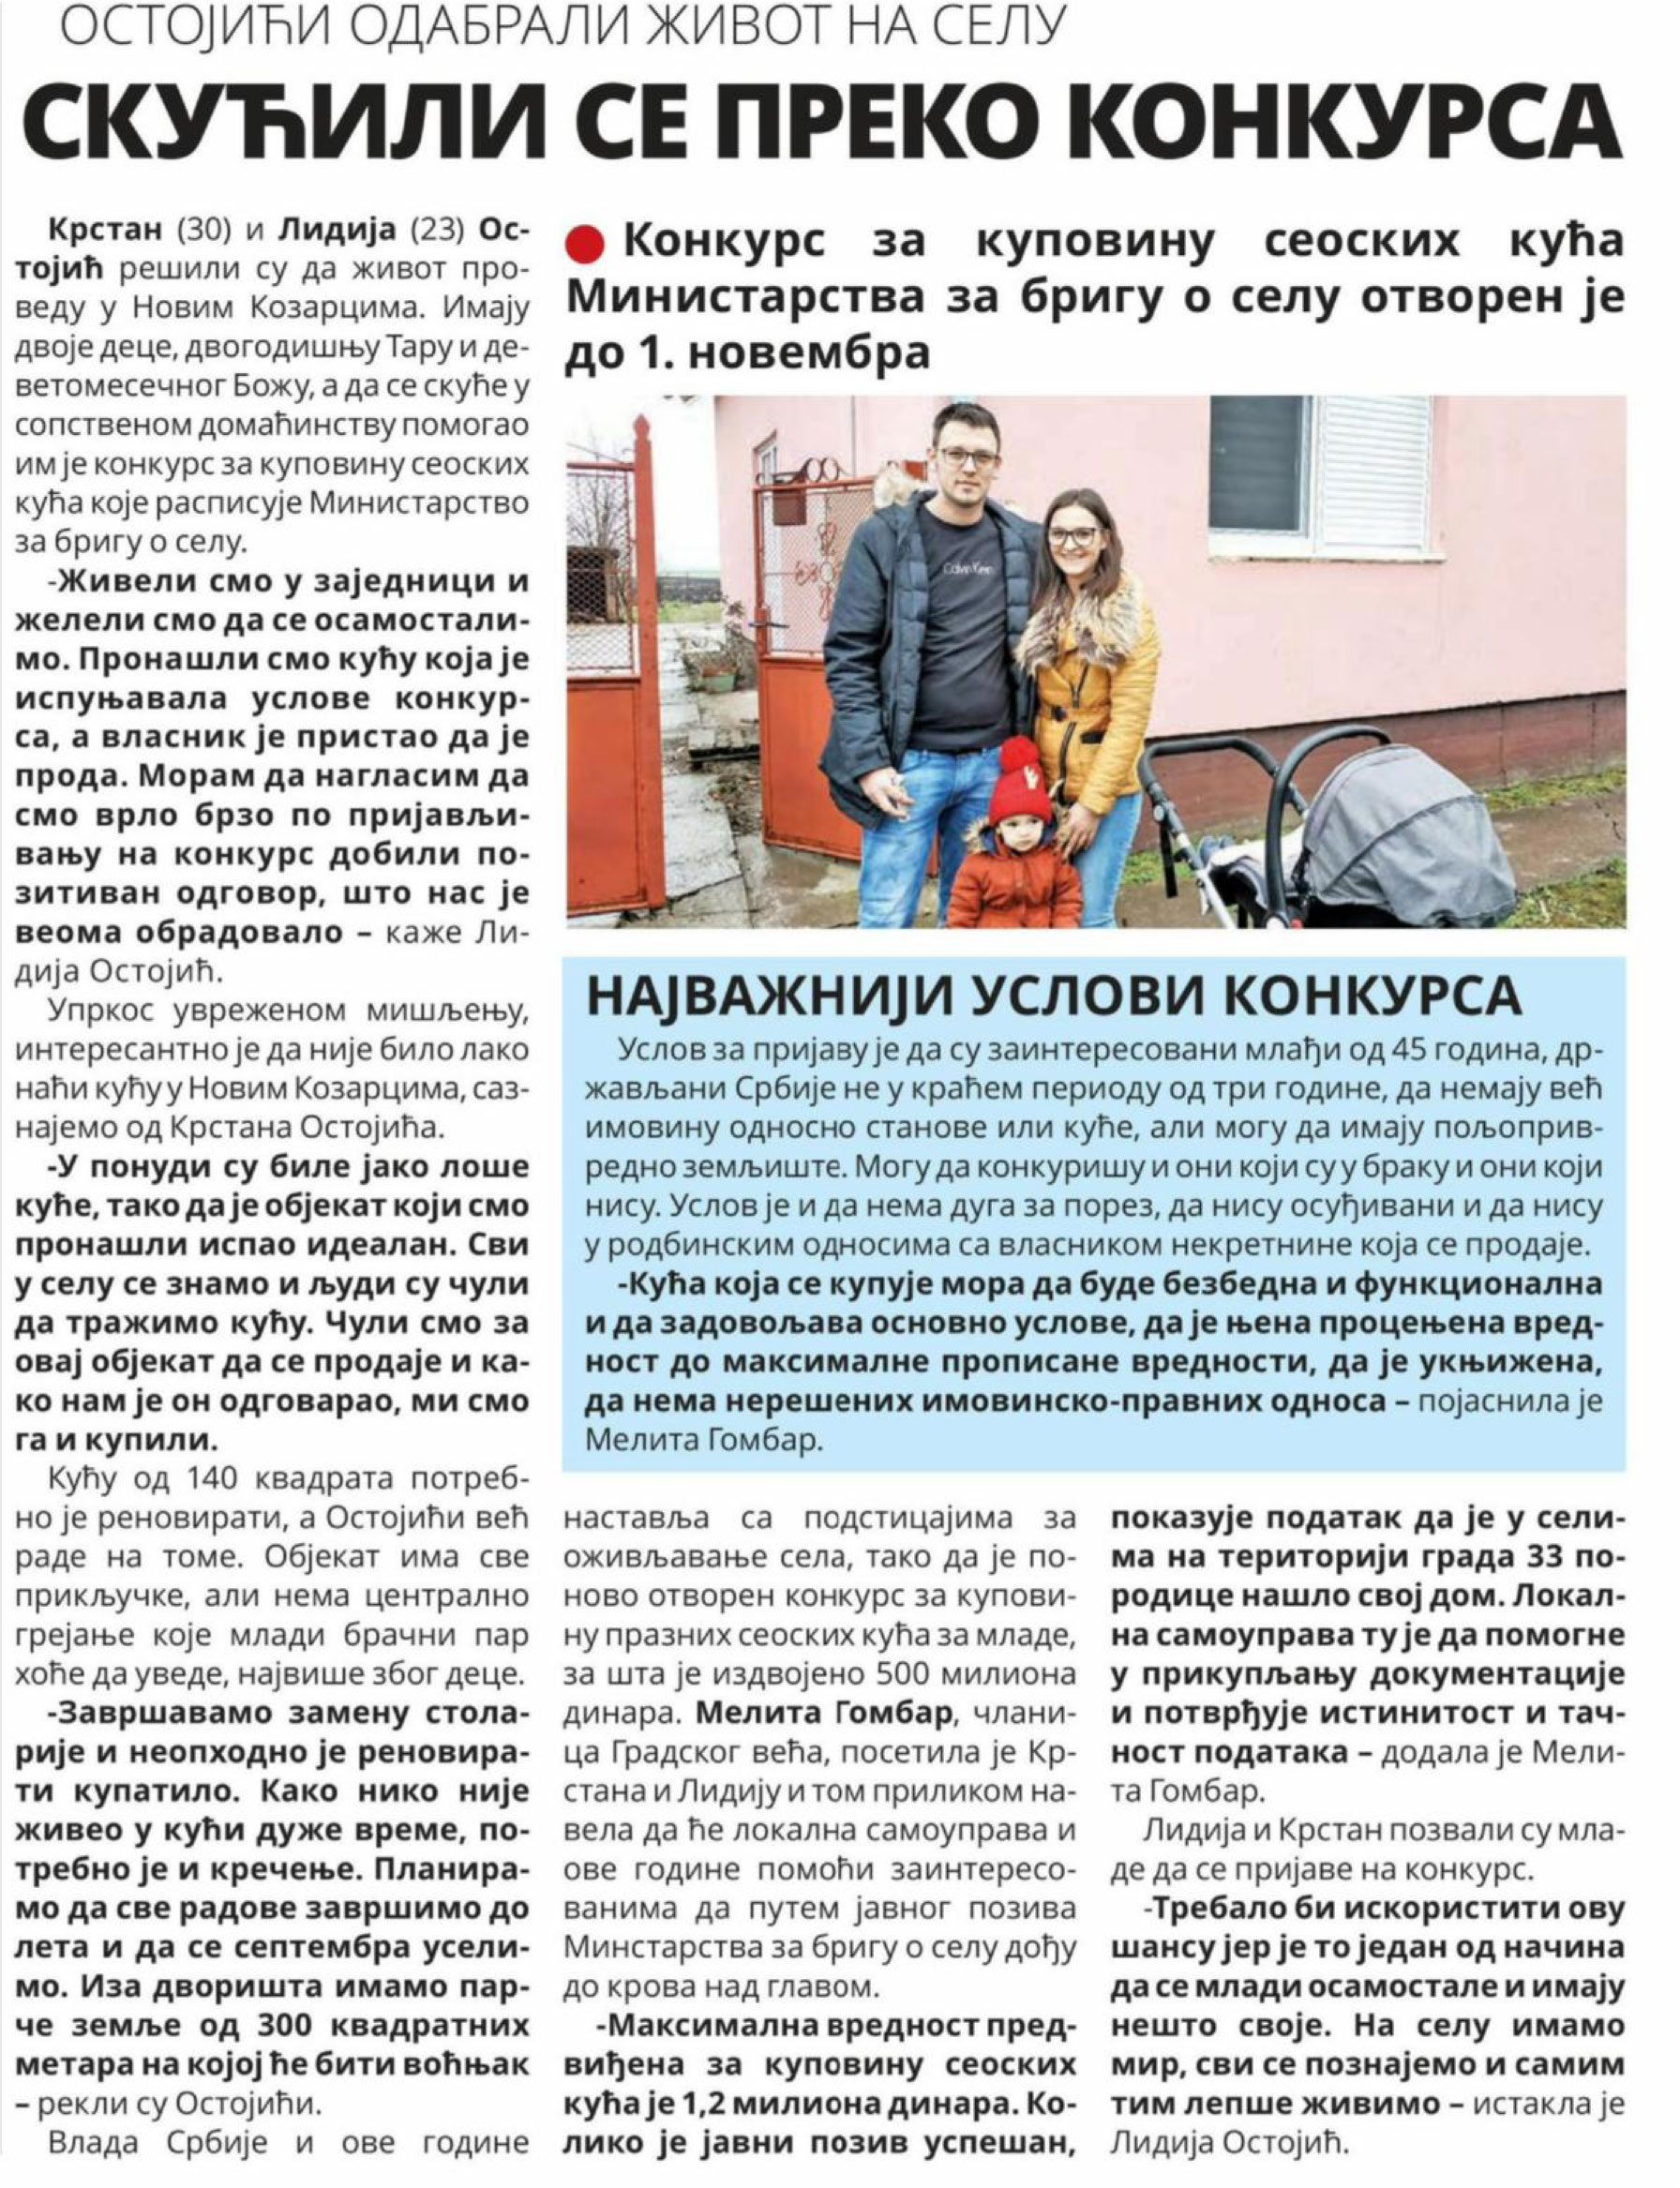  Nova Kikindske novine 